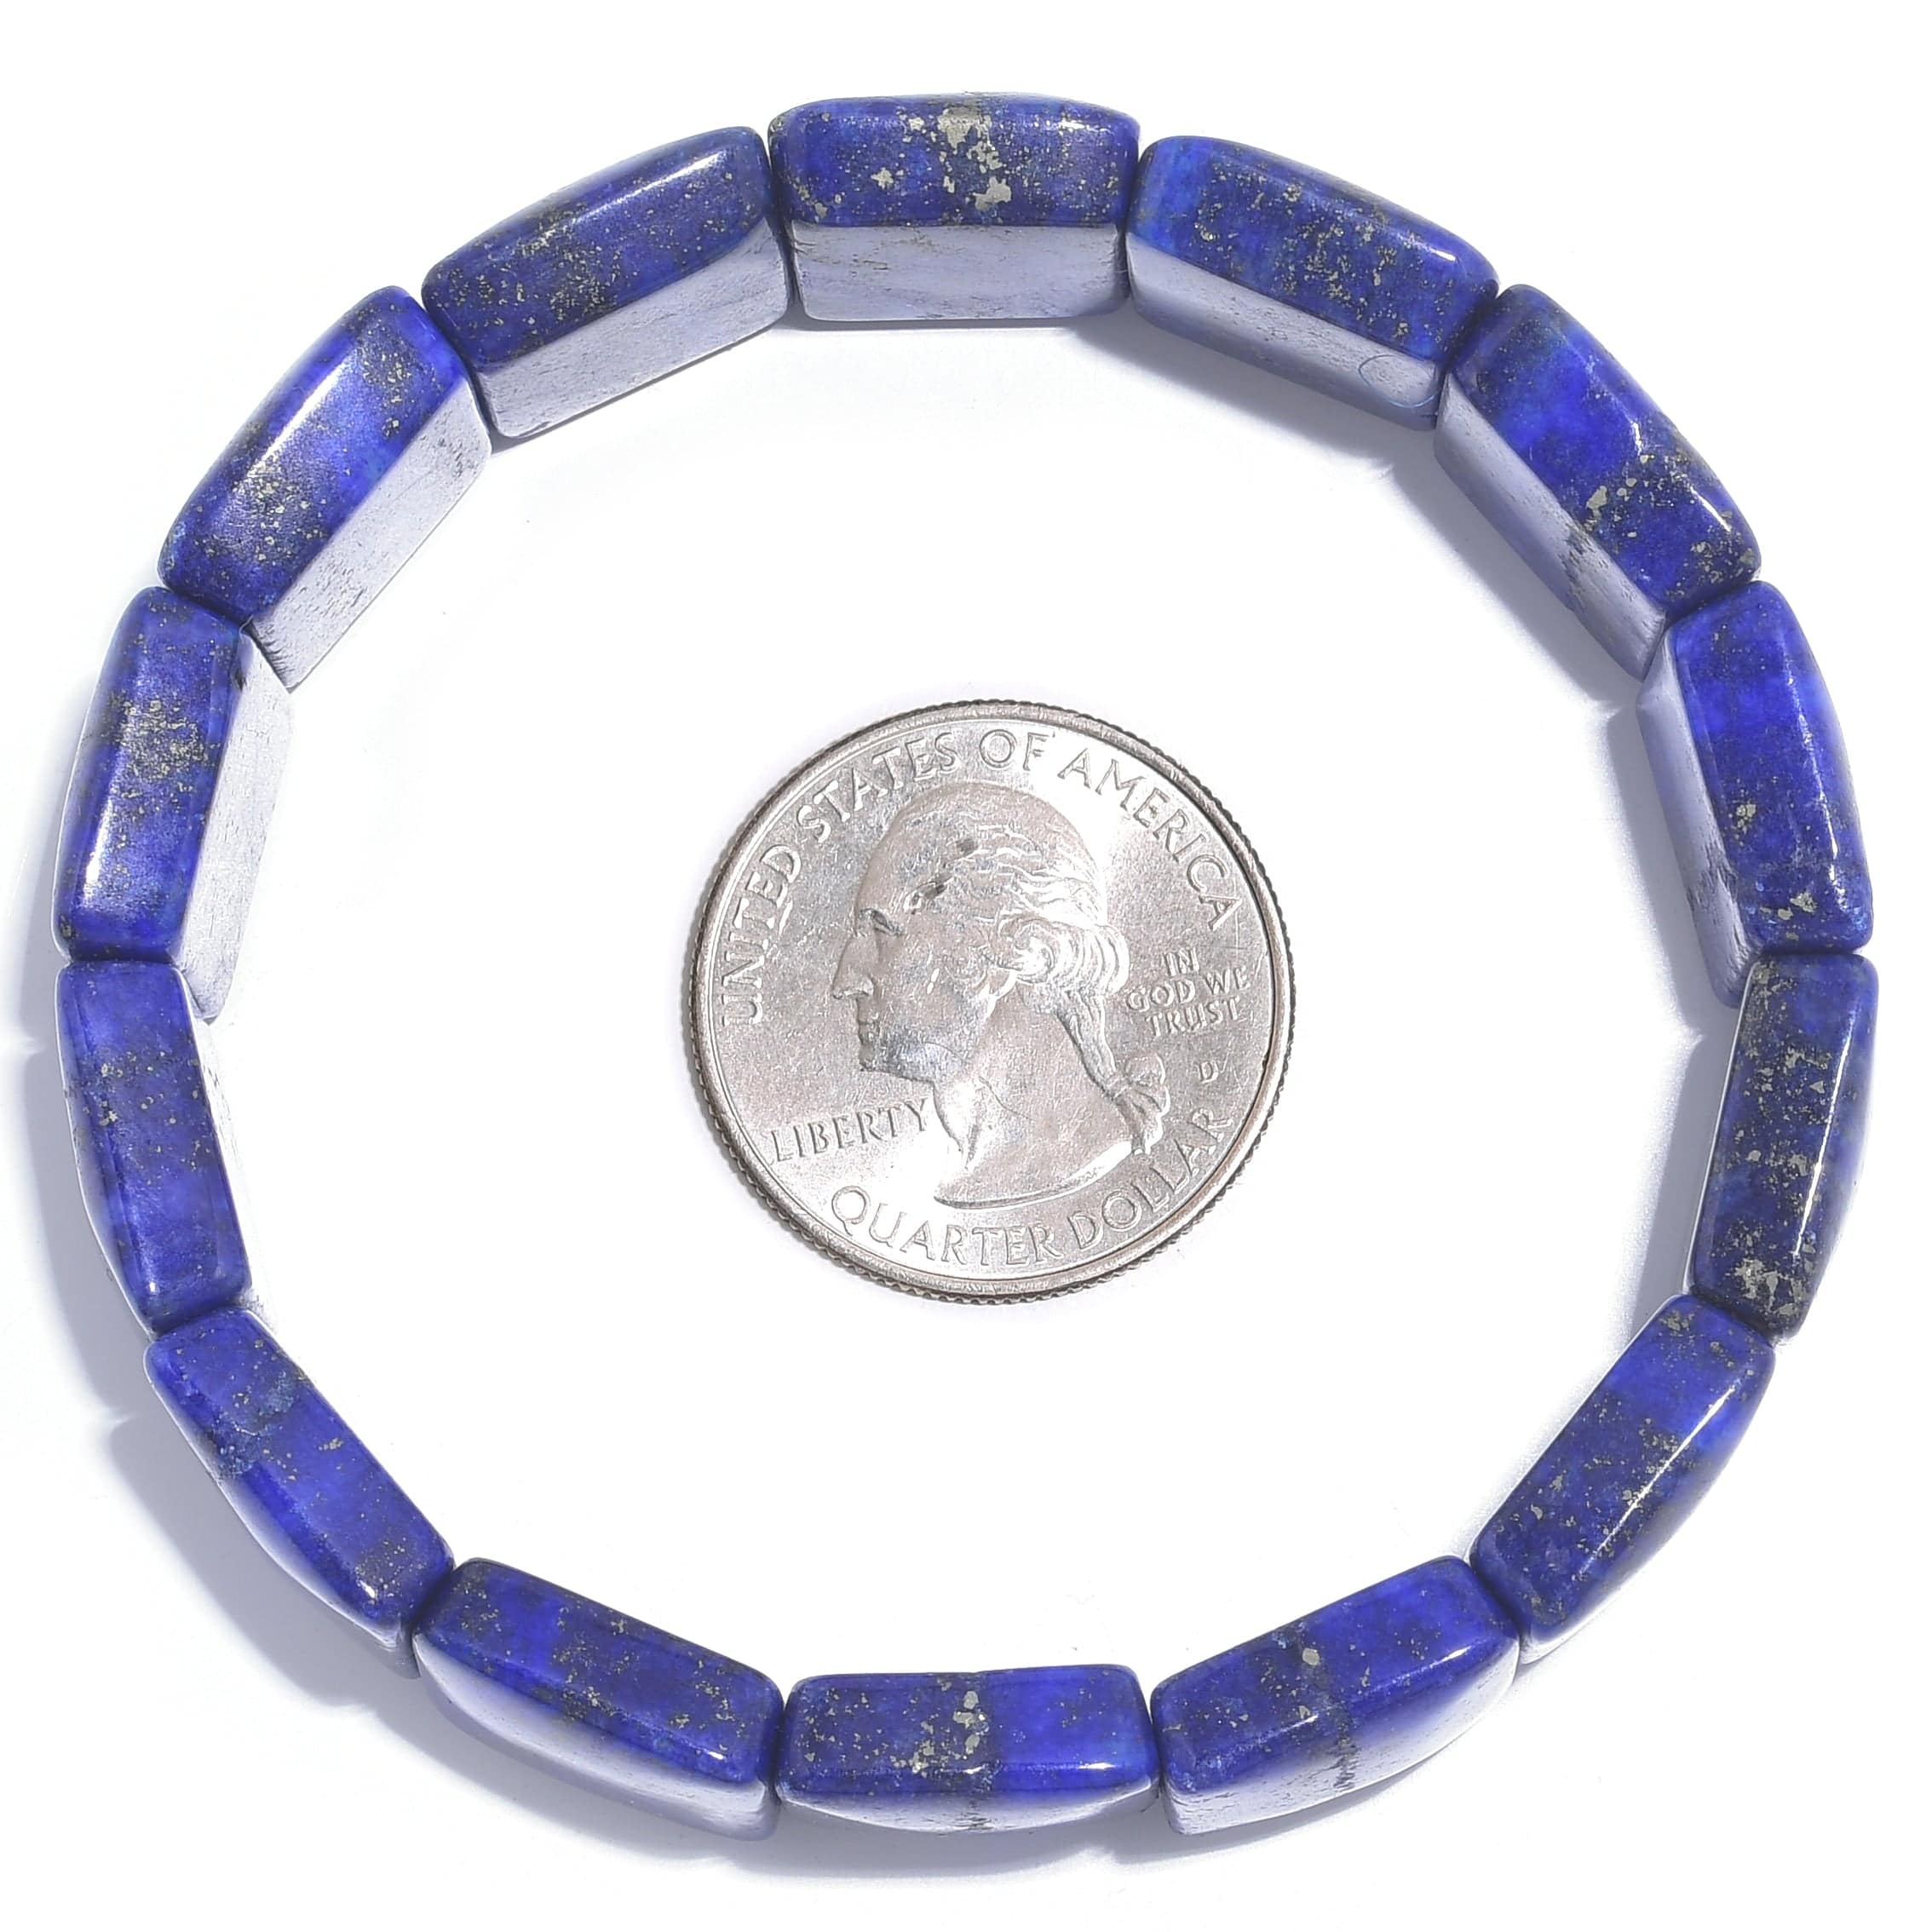 Kalifano Gemstone Bracelets Lapis Lazuli Natural Gemstone Elastic Bracelet BLACK-BGP-028